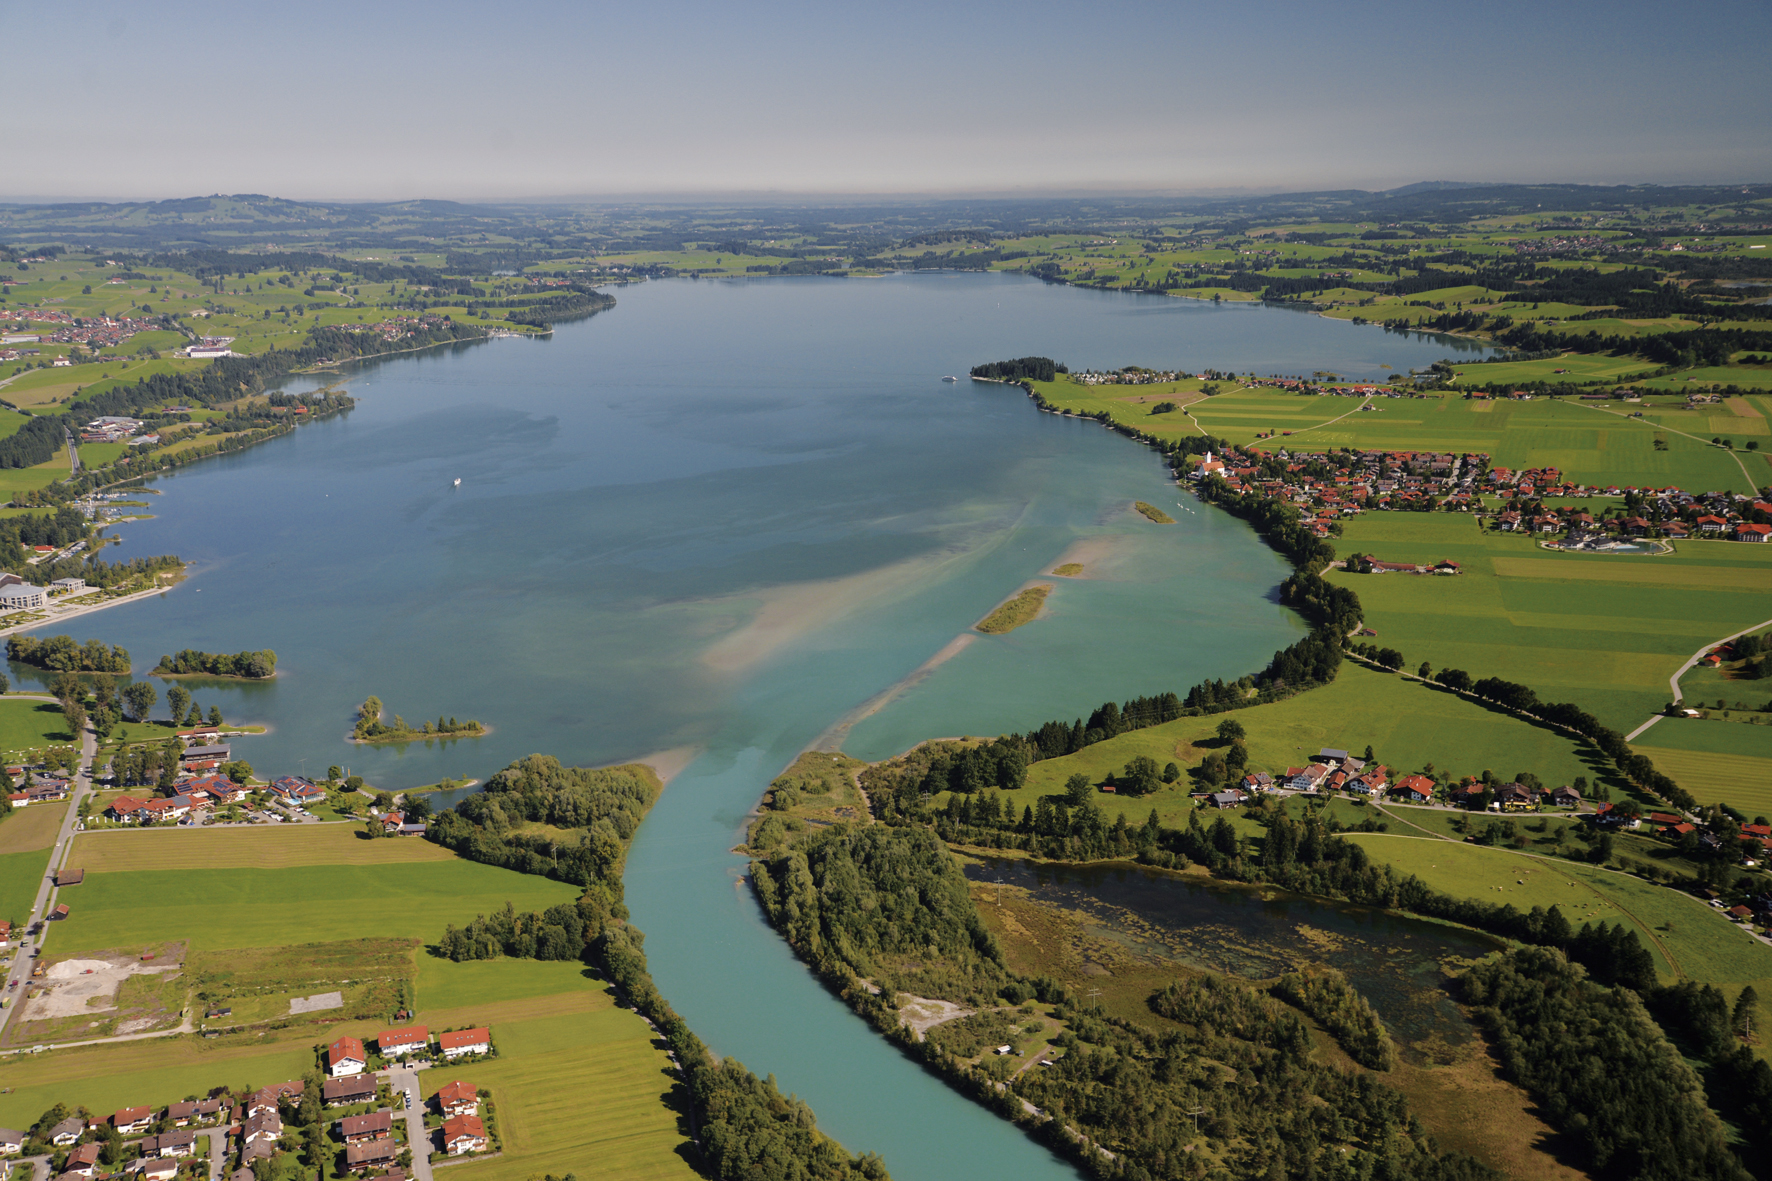 Der Forggensee bei Füssen ist ein künstlich angelegter Stausee - aber deswegen nicht weniger eindrucksvoll, wie die Fotoaufnahme von Wolfgang B. Kleiner aus dem Bildband des Bezirks Schwaben zeigt.